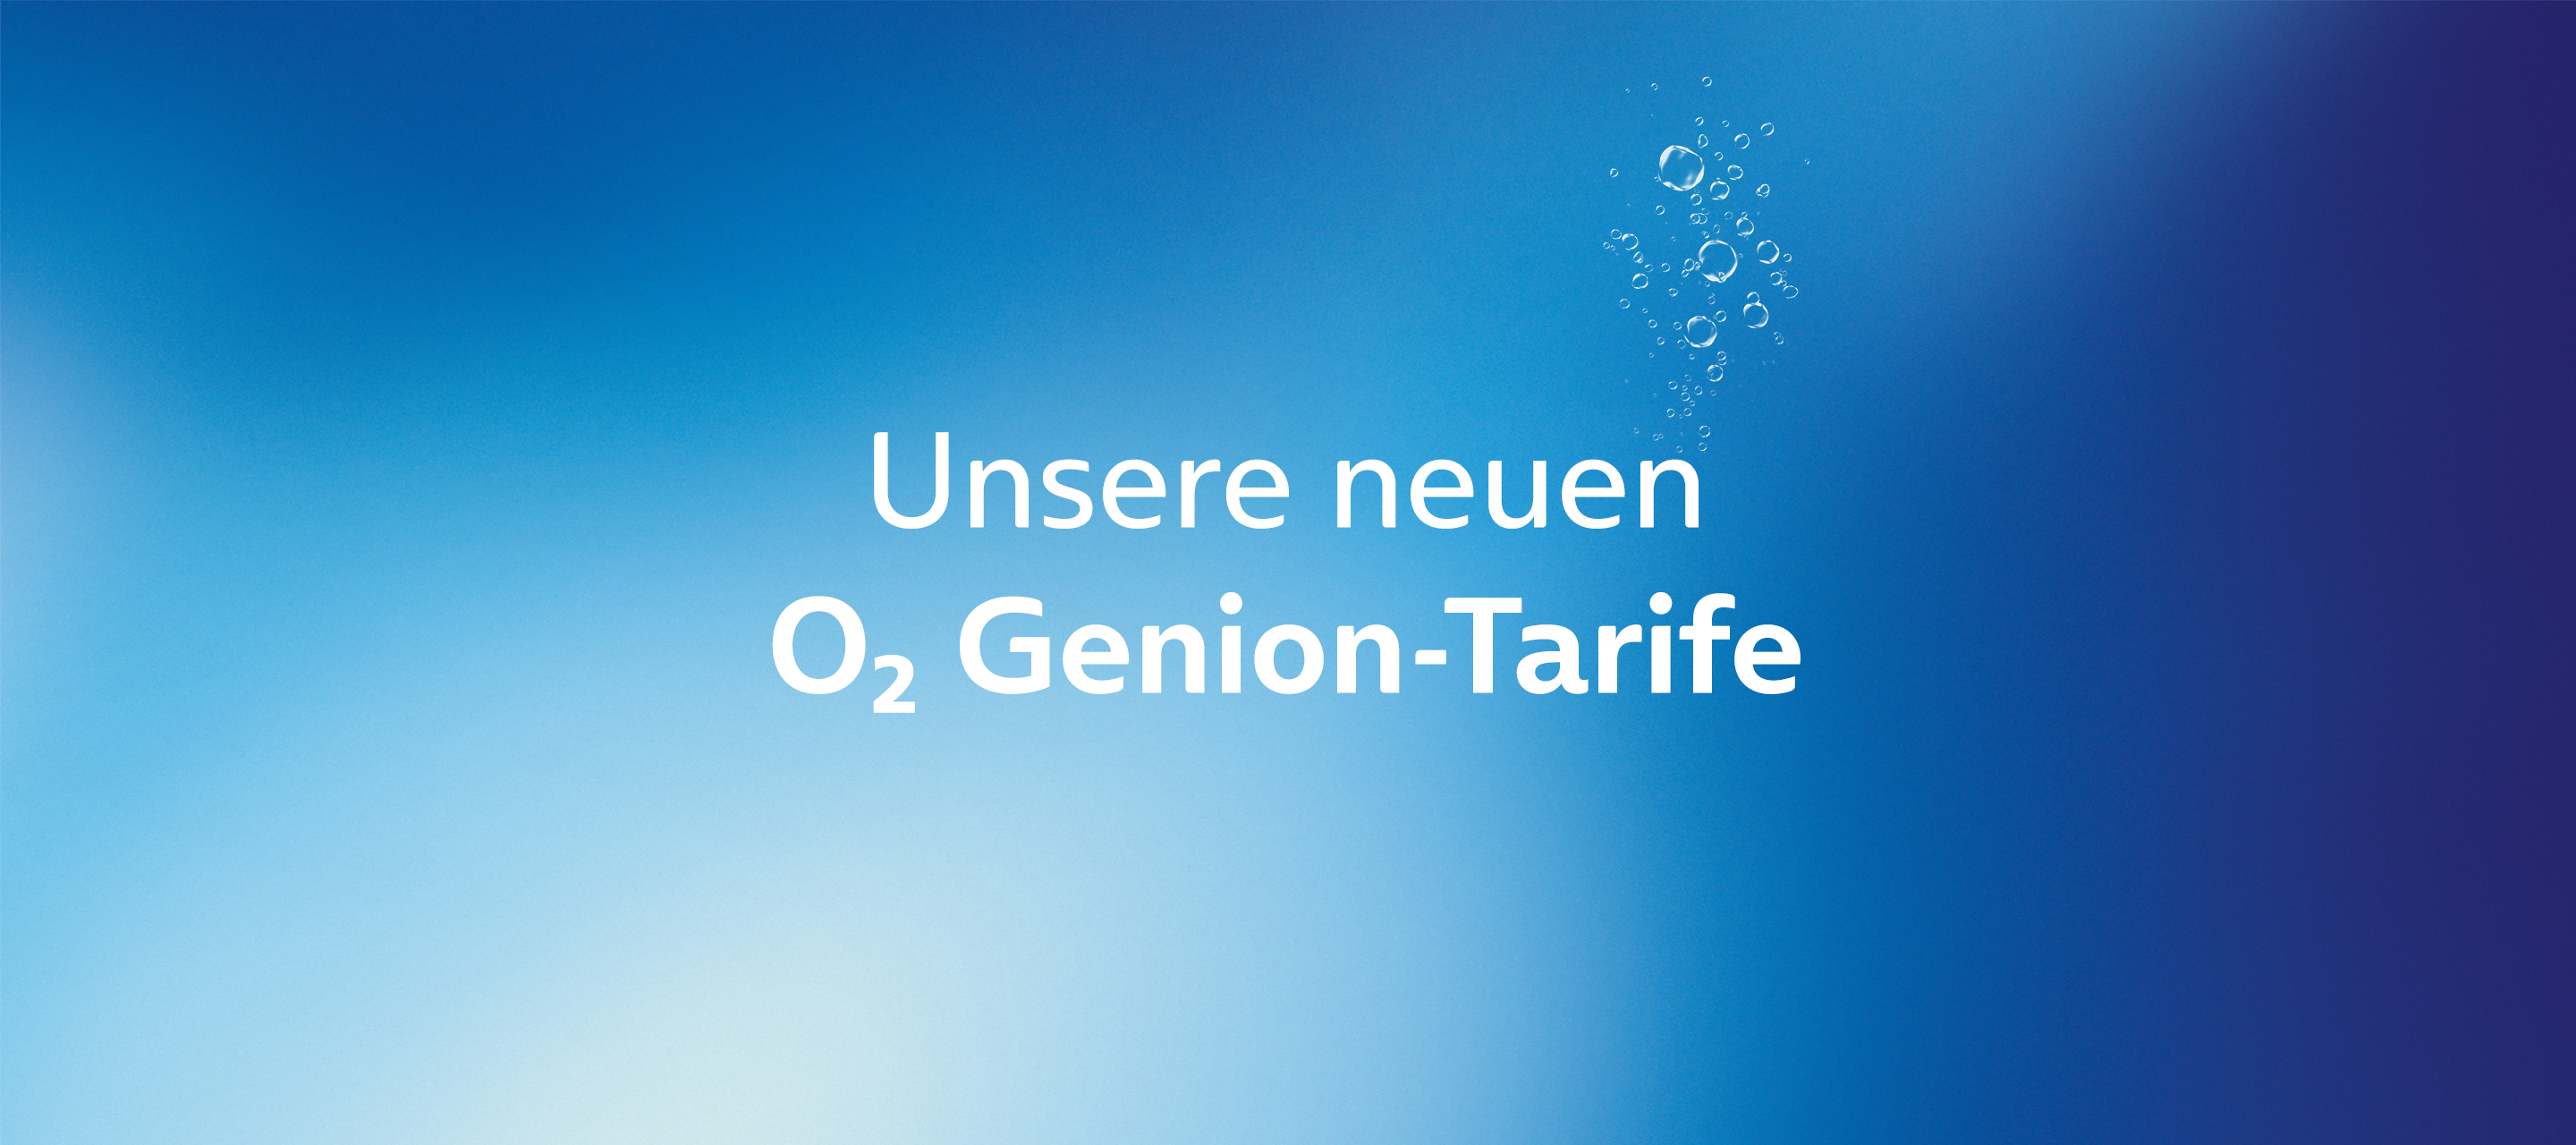 Unsere neuen Genion-Tarife - nur heute exklusiv in der O₂ Community